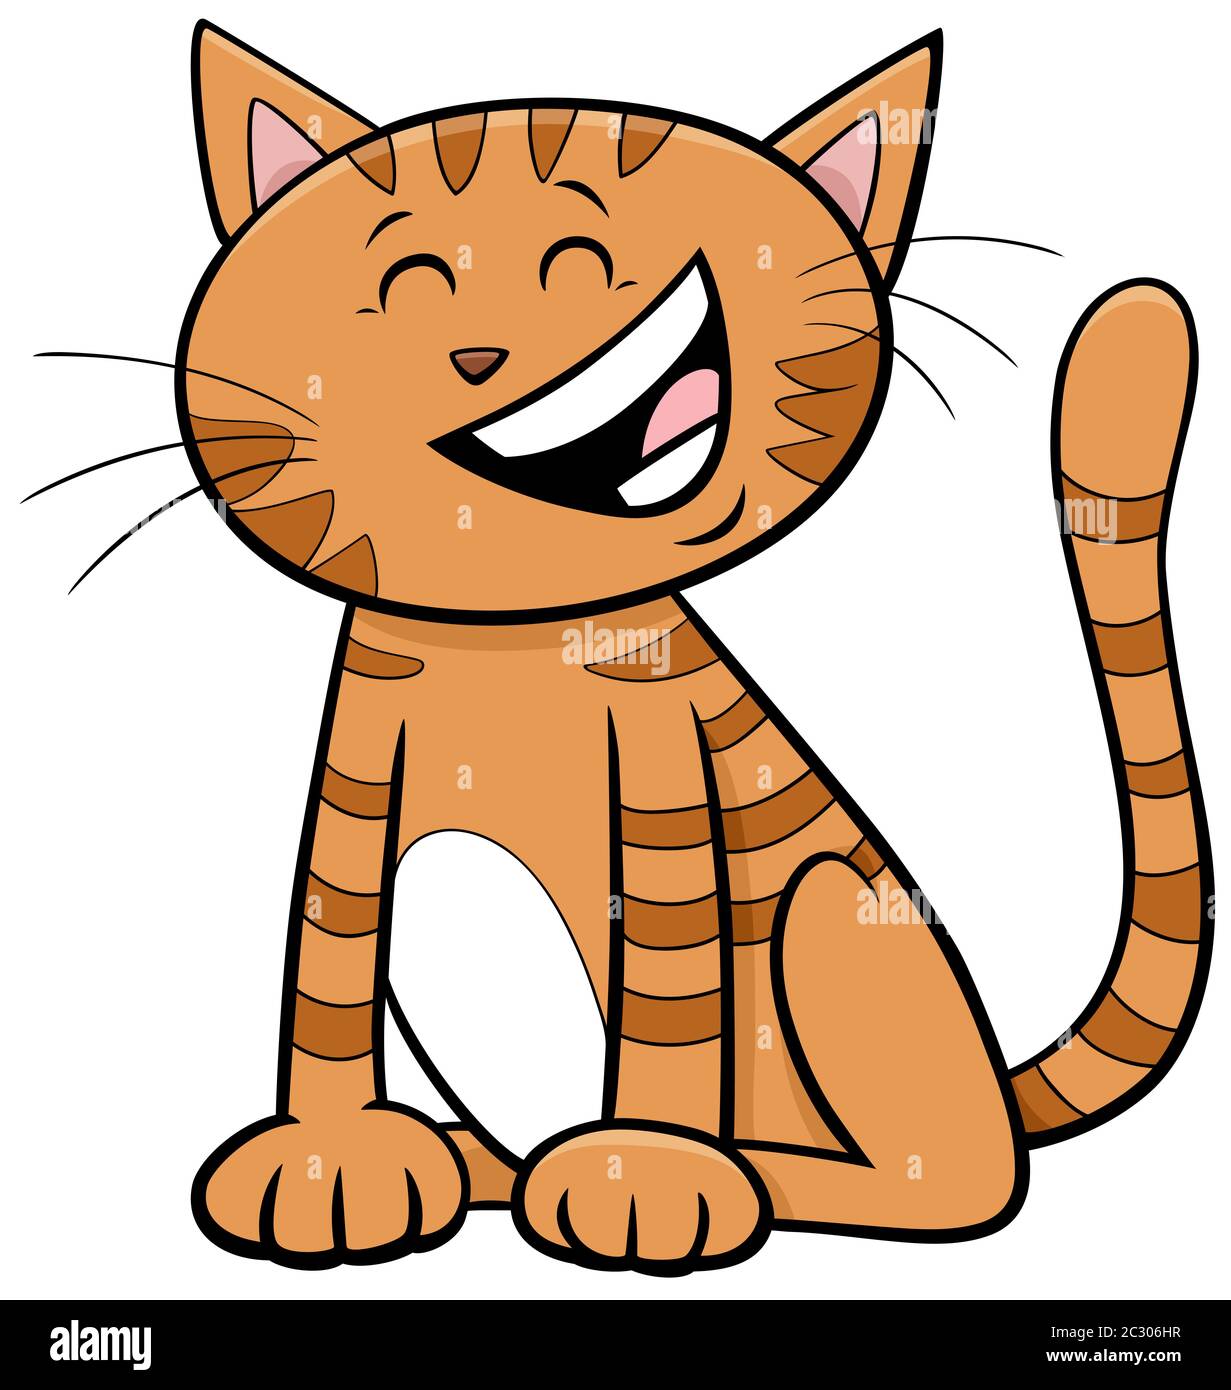 divertente personaggio di un animale fumetto o di un kitten Foto stock -  Alamy